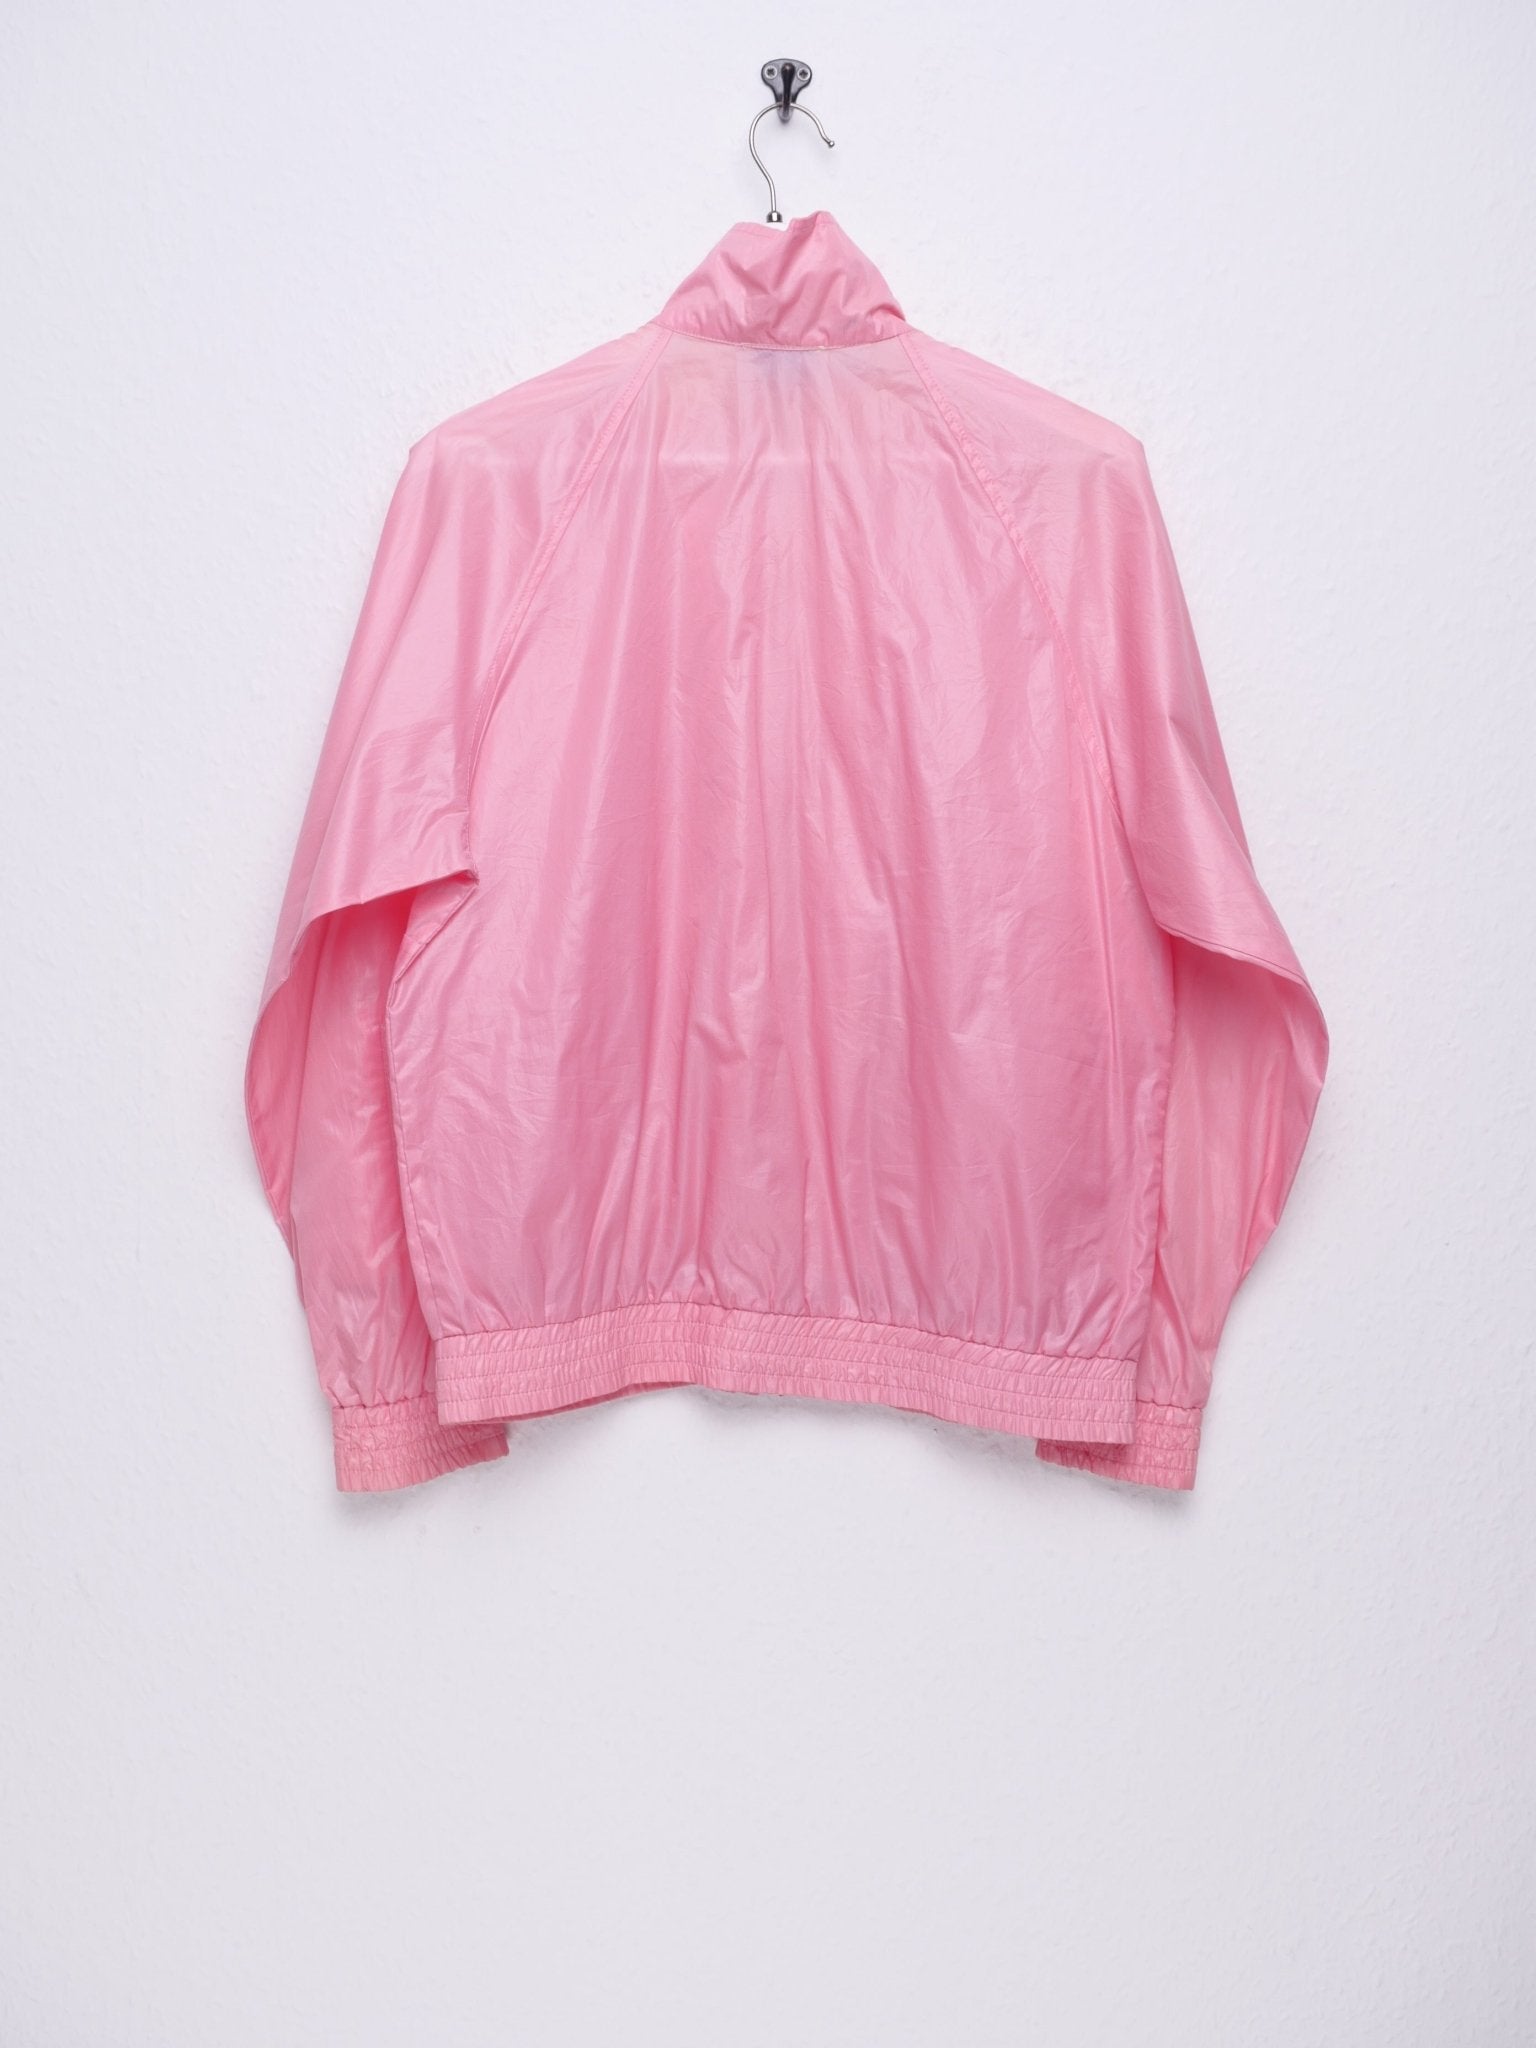 nabo Aktiver Luftfart Lacoste patched logo pink vintage track jacket – Peeces